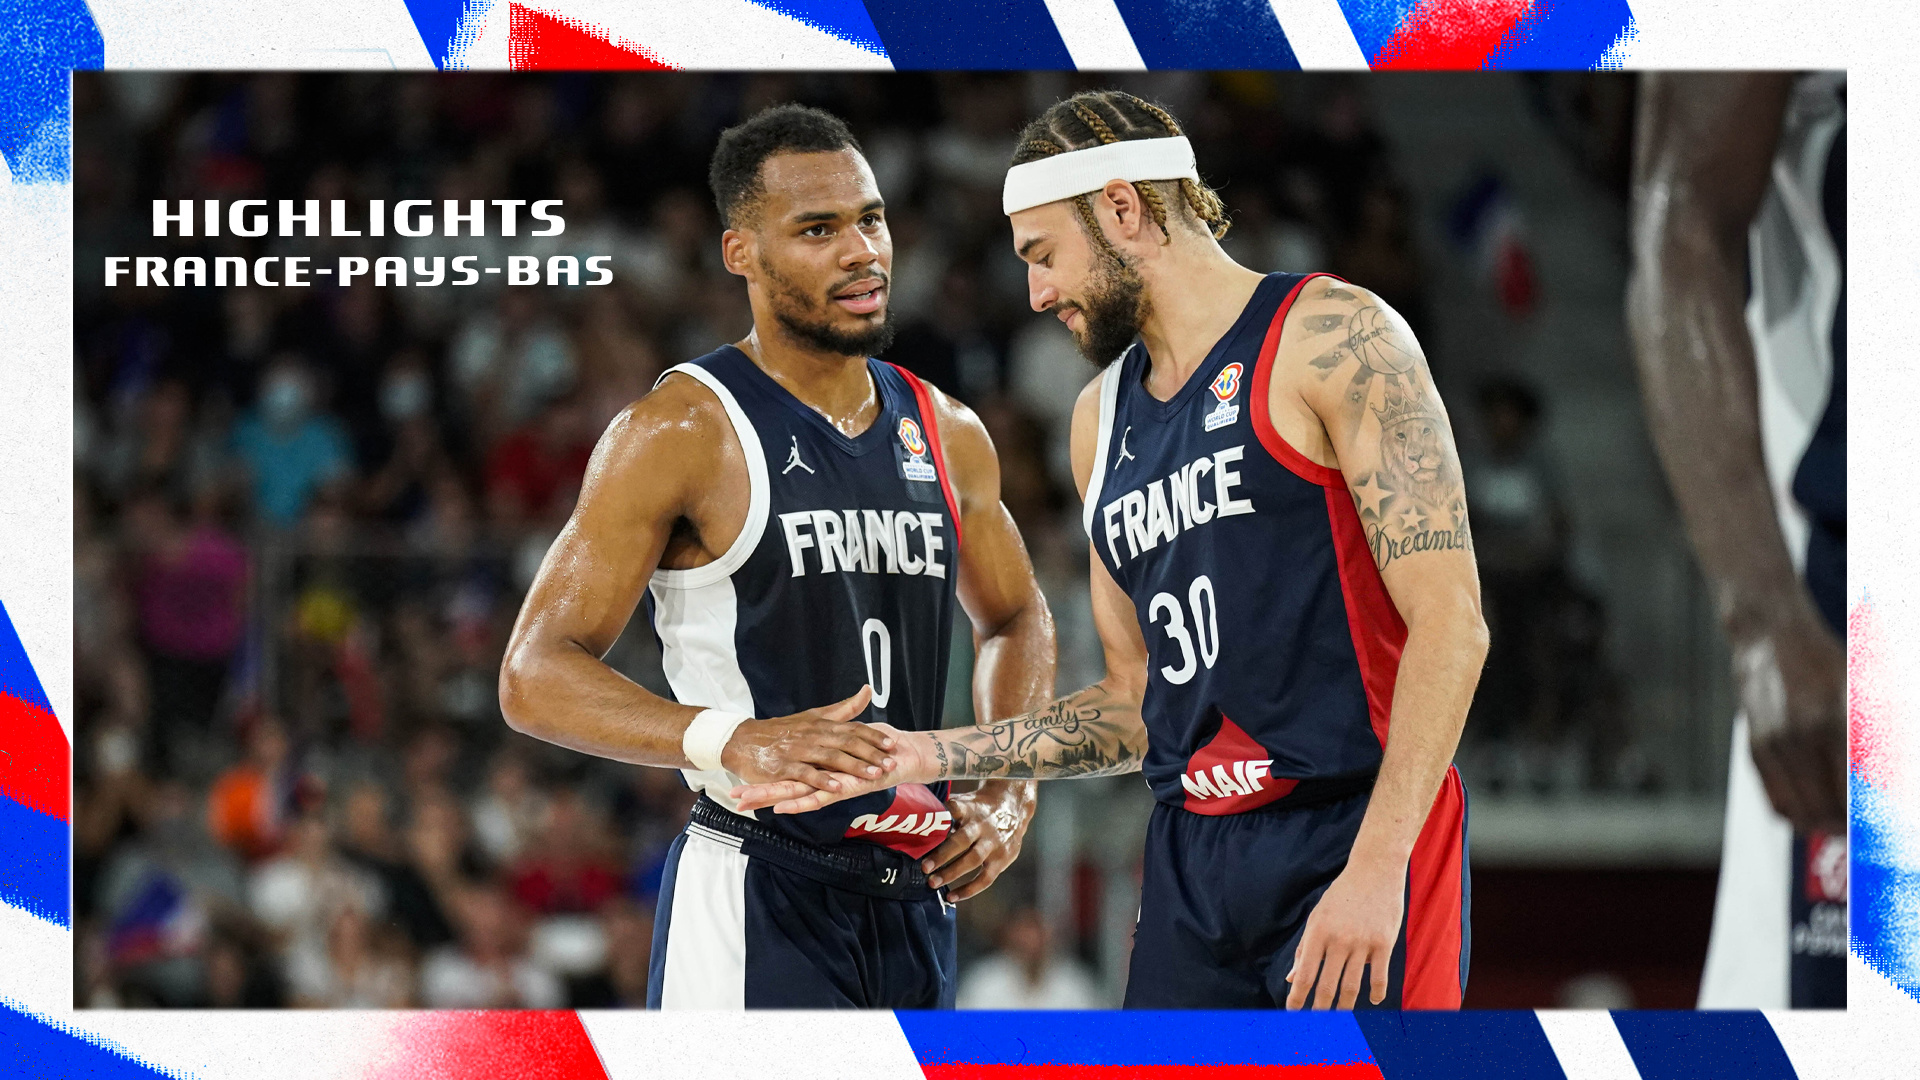 France vs Pays-Bas 07.08.22 I Préparation EuroBasket 2022 I Full Highlights